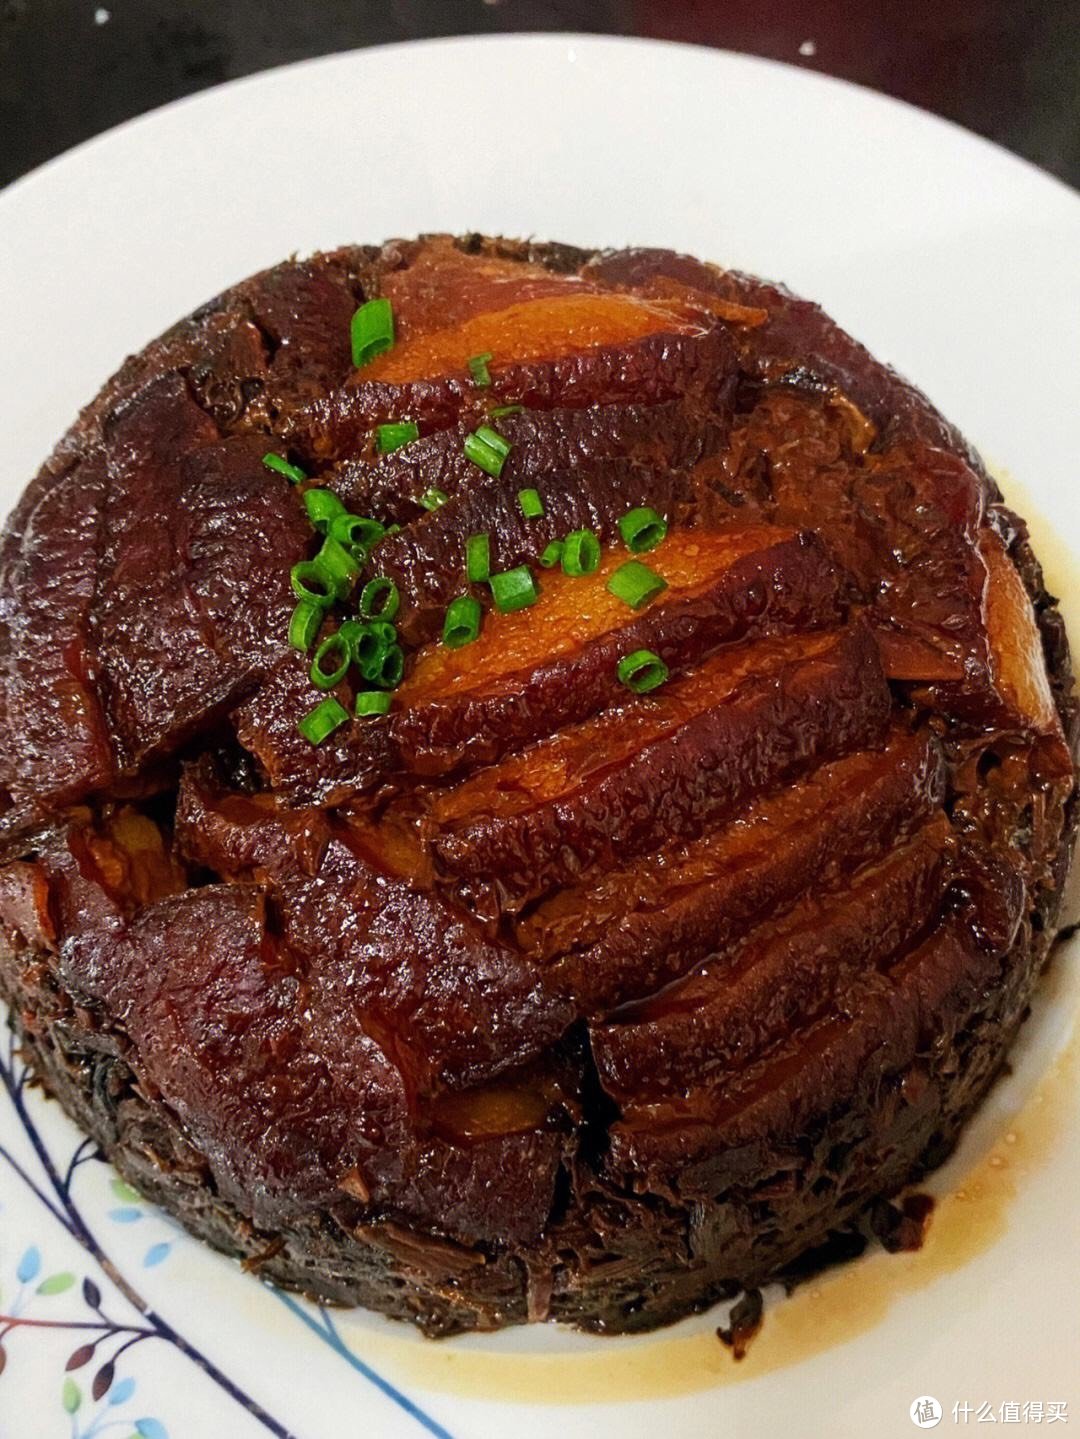 「梅菜扣肉的做法」:传统美食的精湛工艺